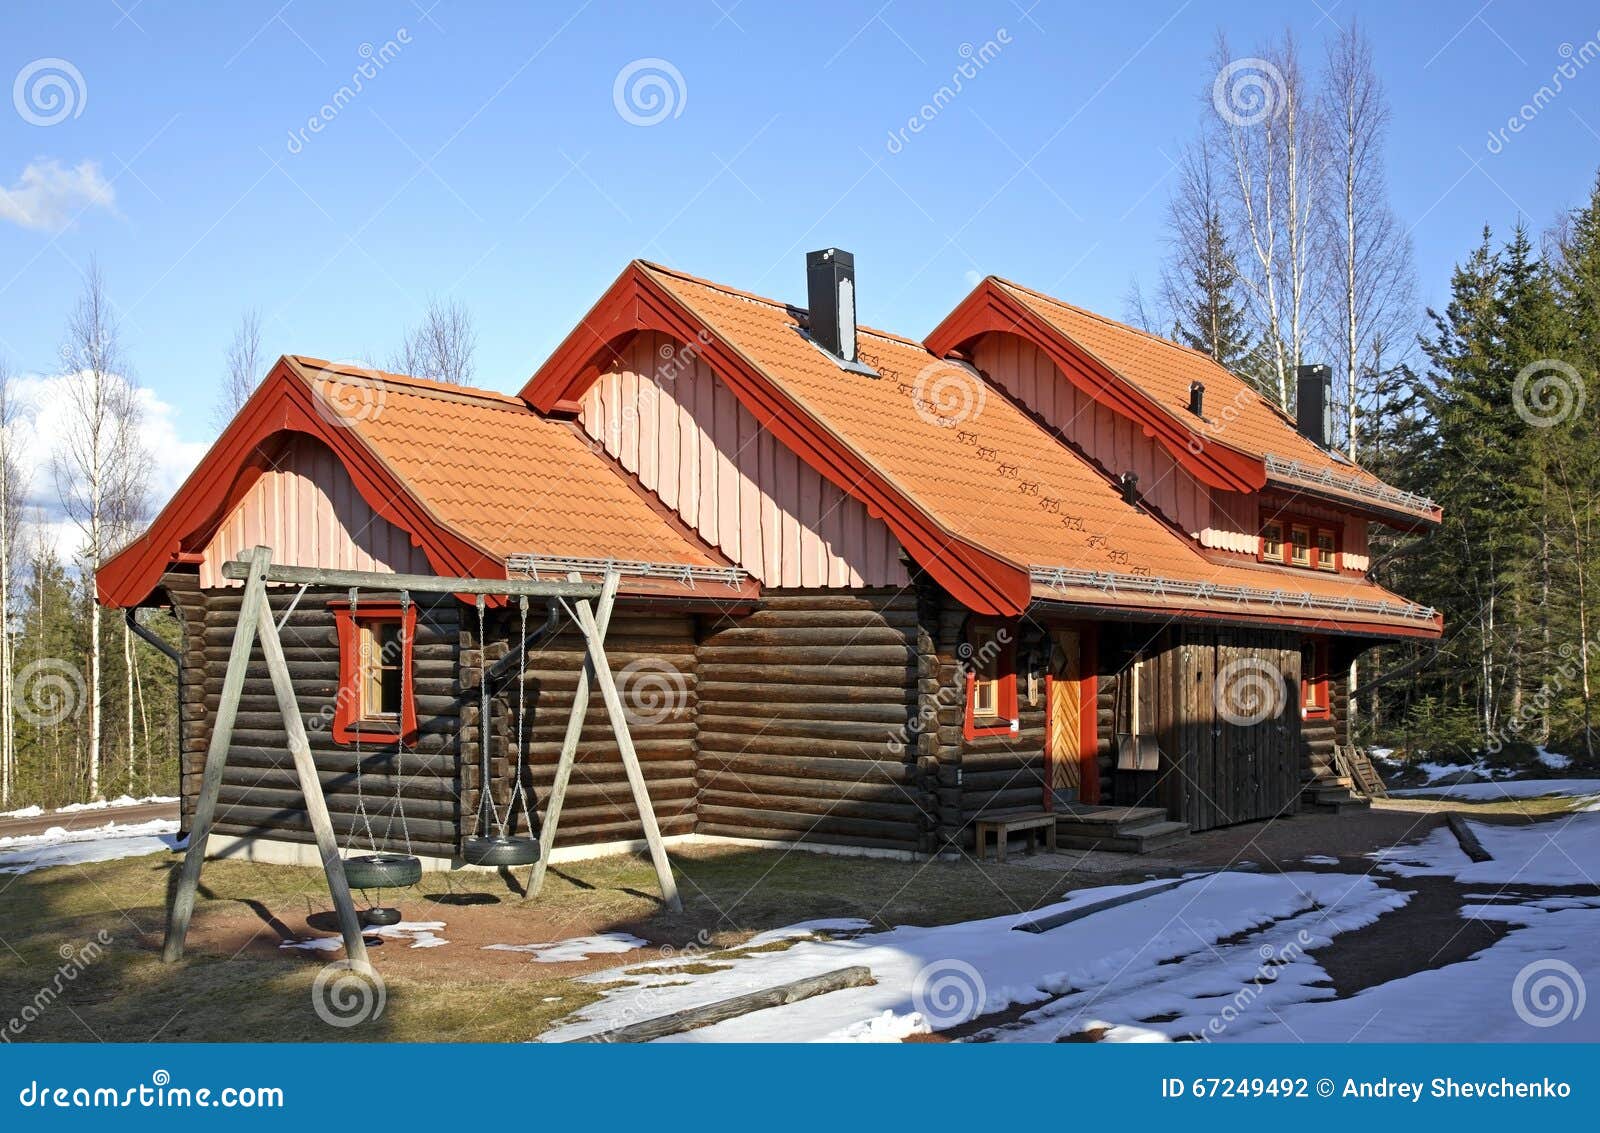 building in bjornstigen. salen. dalarna county. sweden